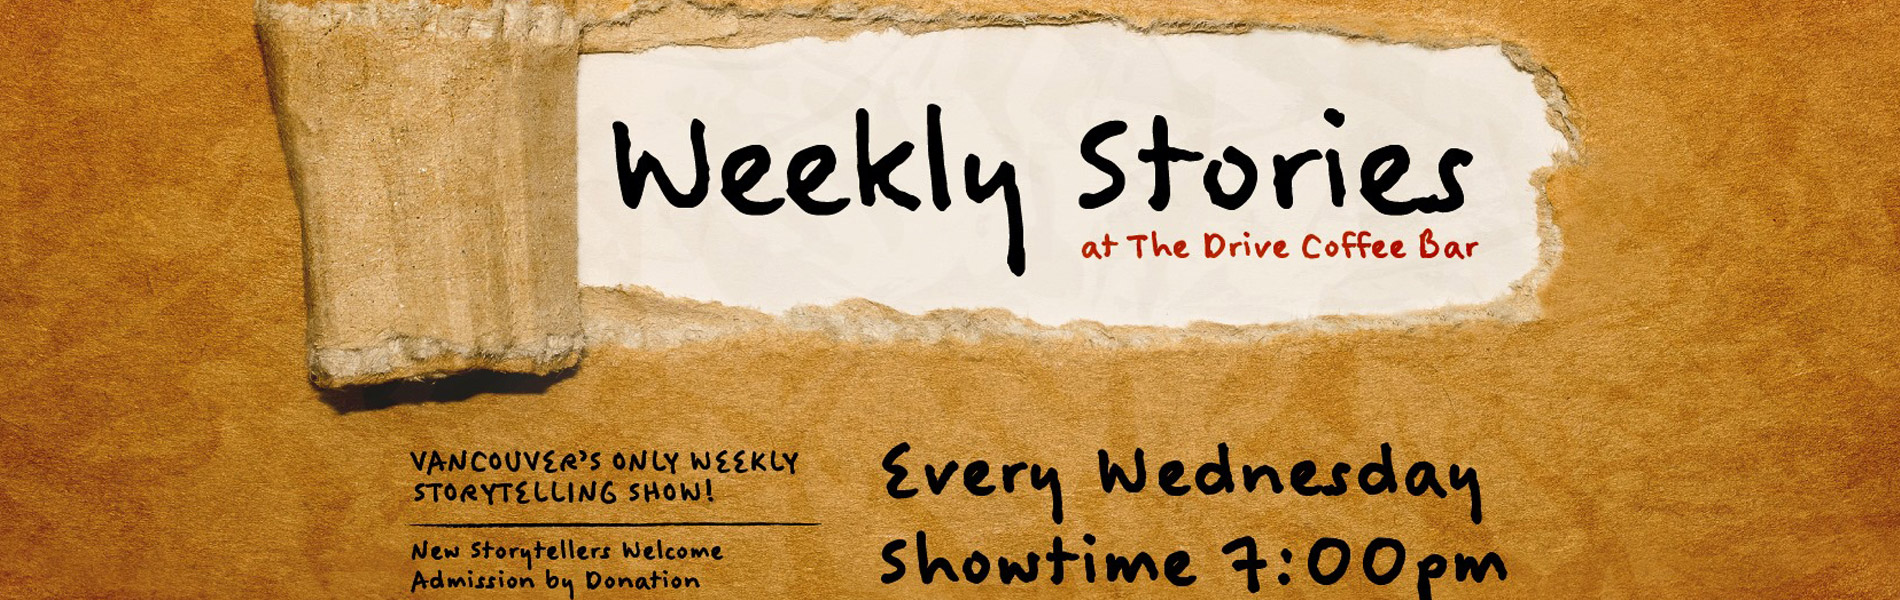 Weekly Stories